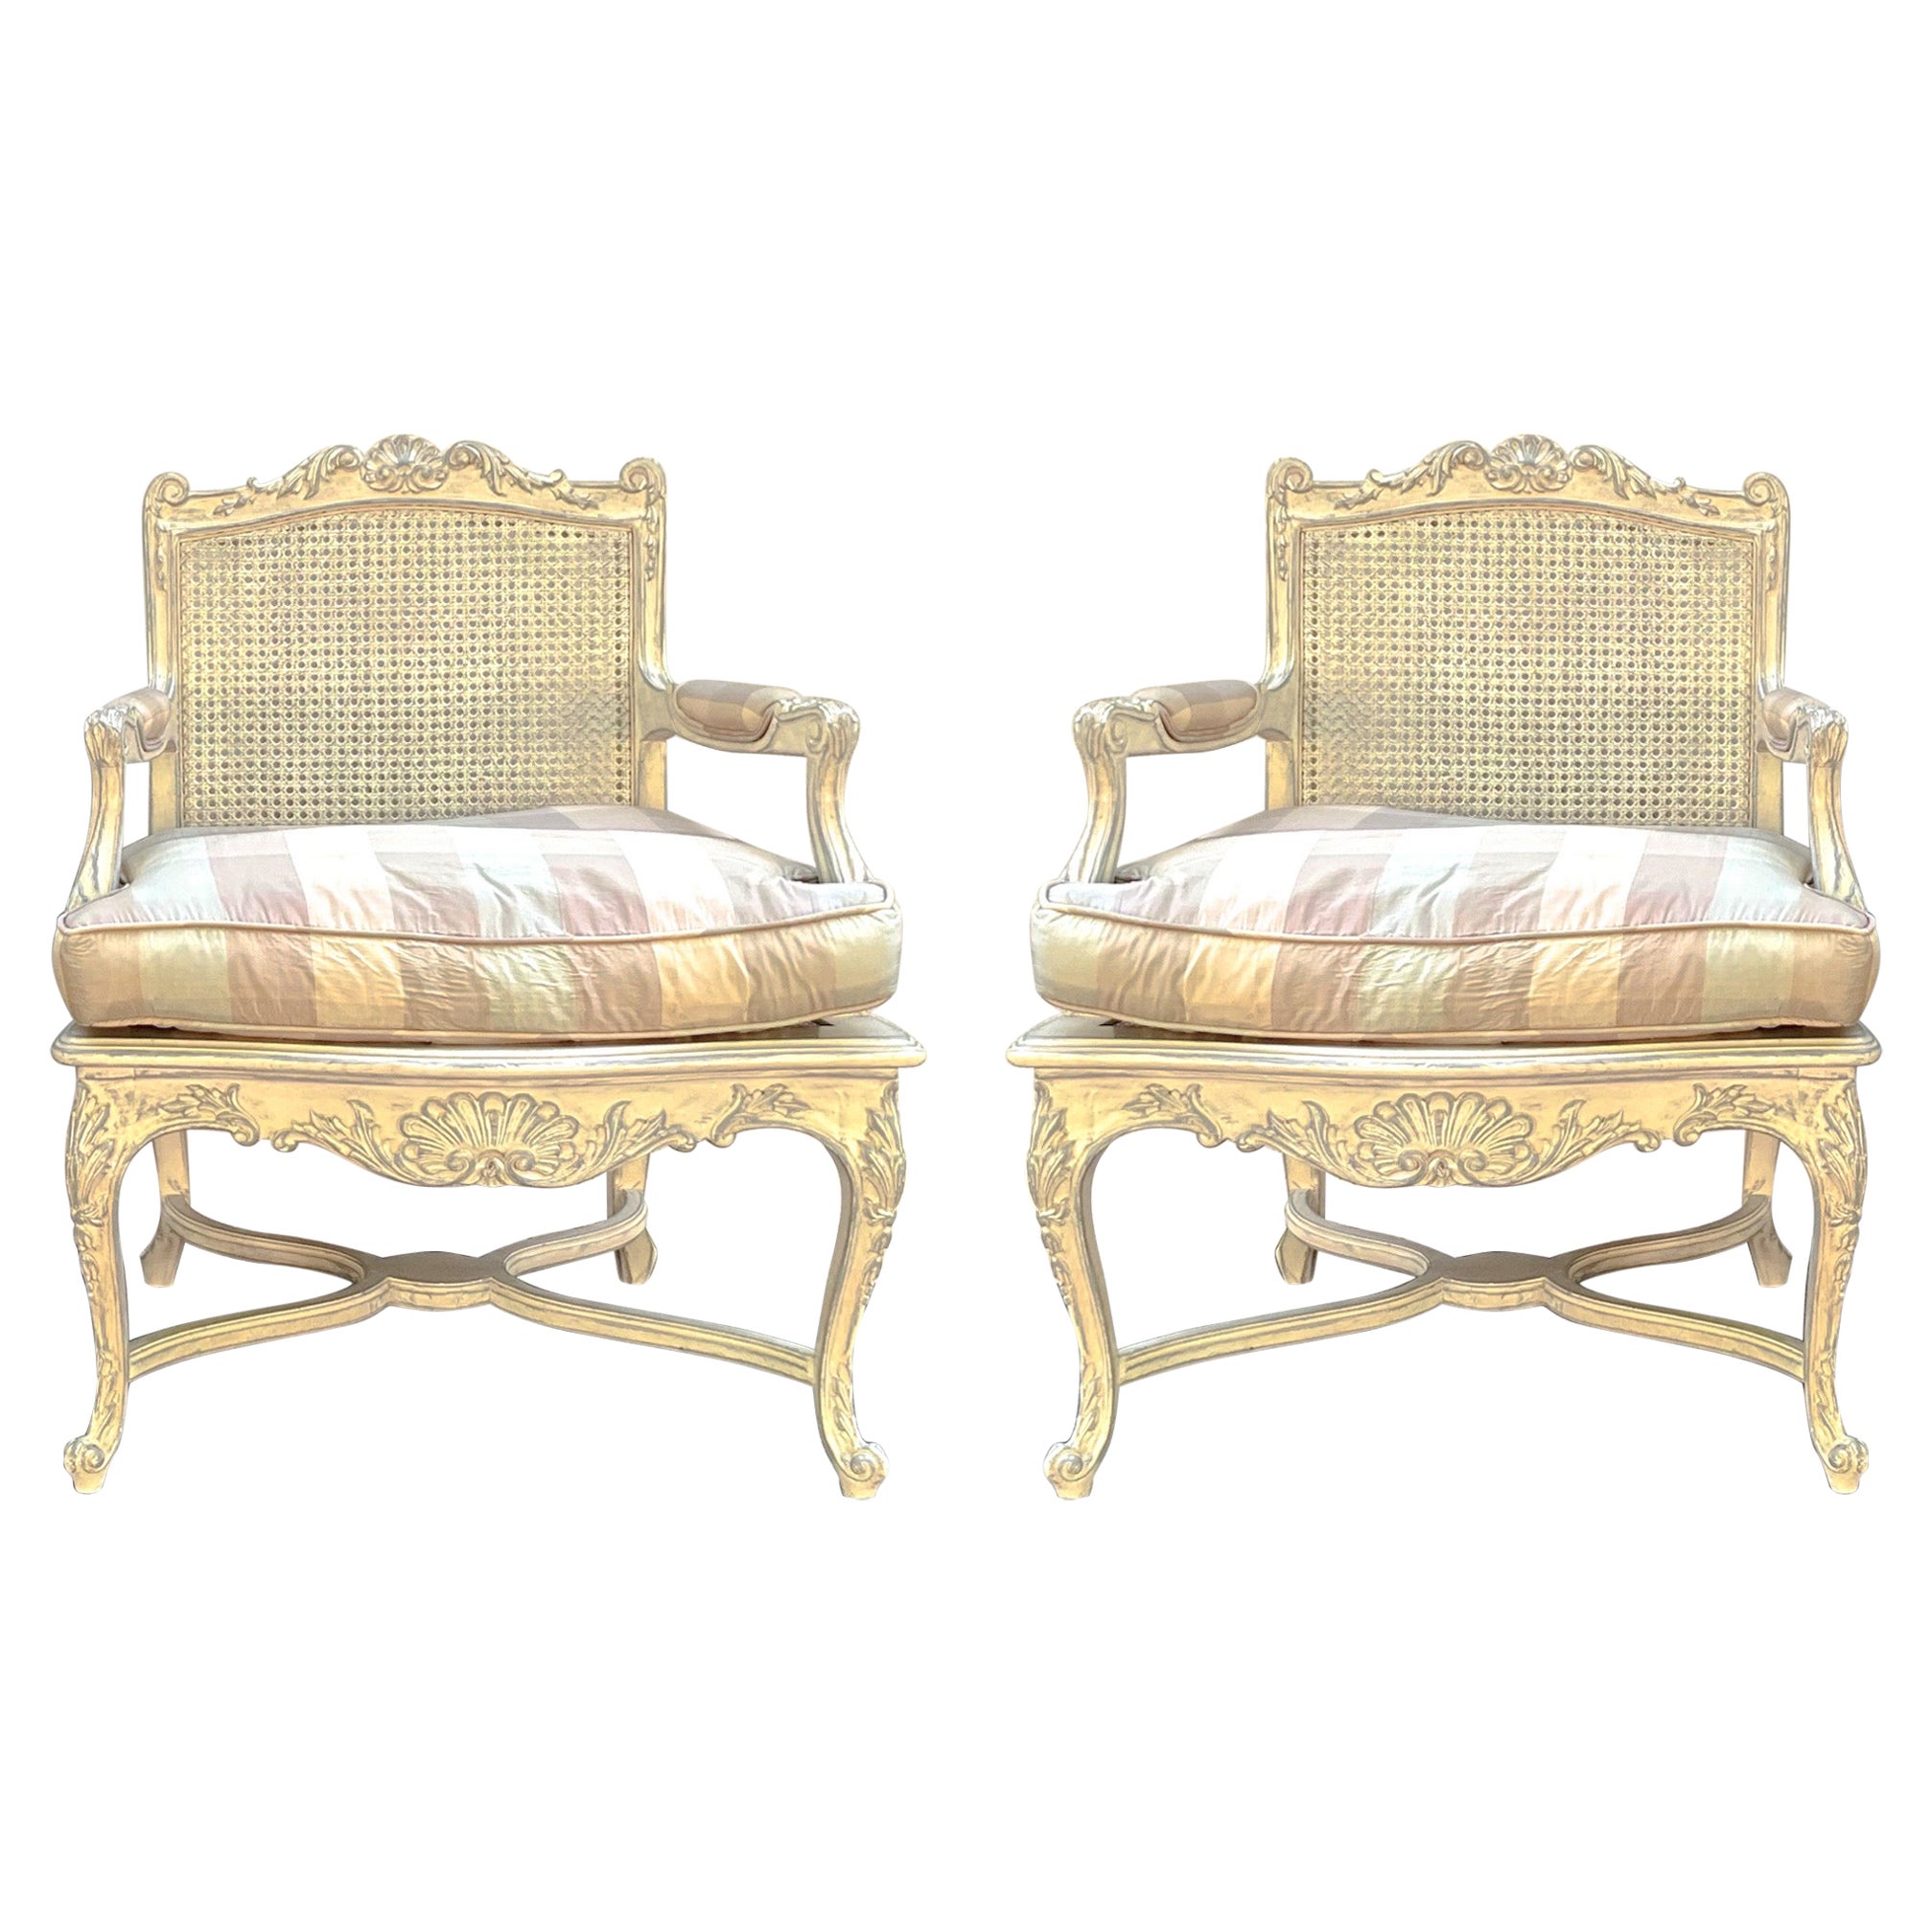 Dies ist ein schönes Paar von Französisch Louis XV Stil caned bergere Stühle mit Vintage-Karo-Polsterung. Die Polsterung fühlt sich wie Seide an, könnte aber auch ein Mischgewebe sein. Die Rahmen sind elfenbeinfarben mit grauen Akzenten. Die